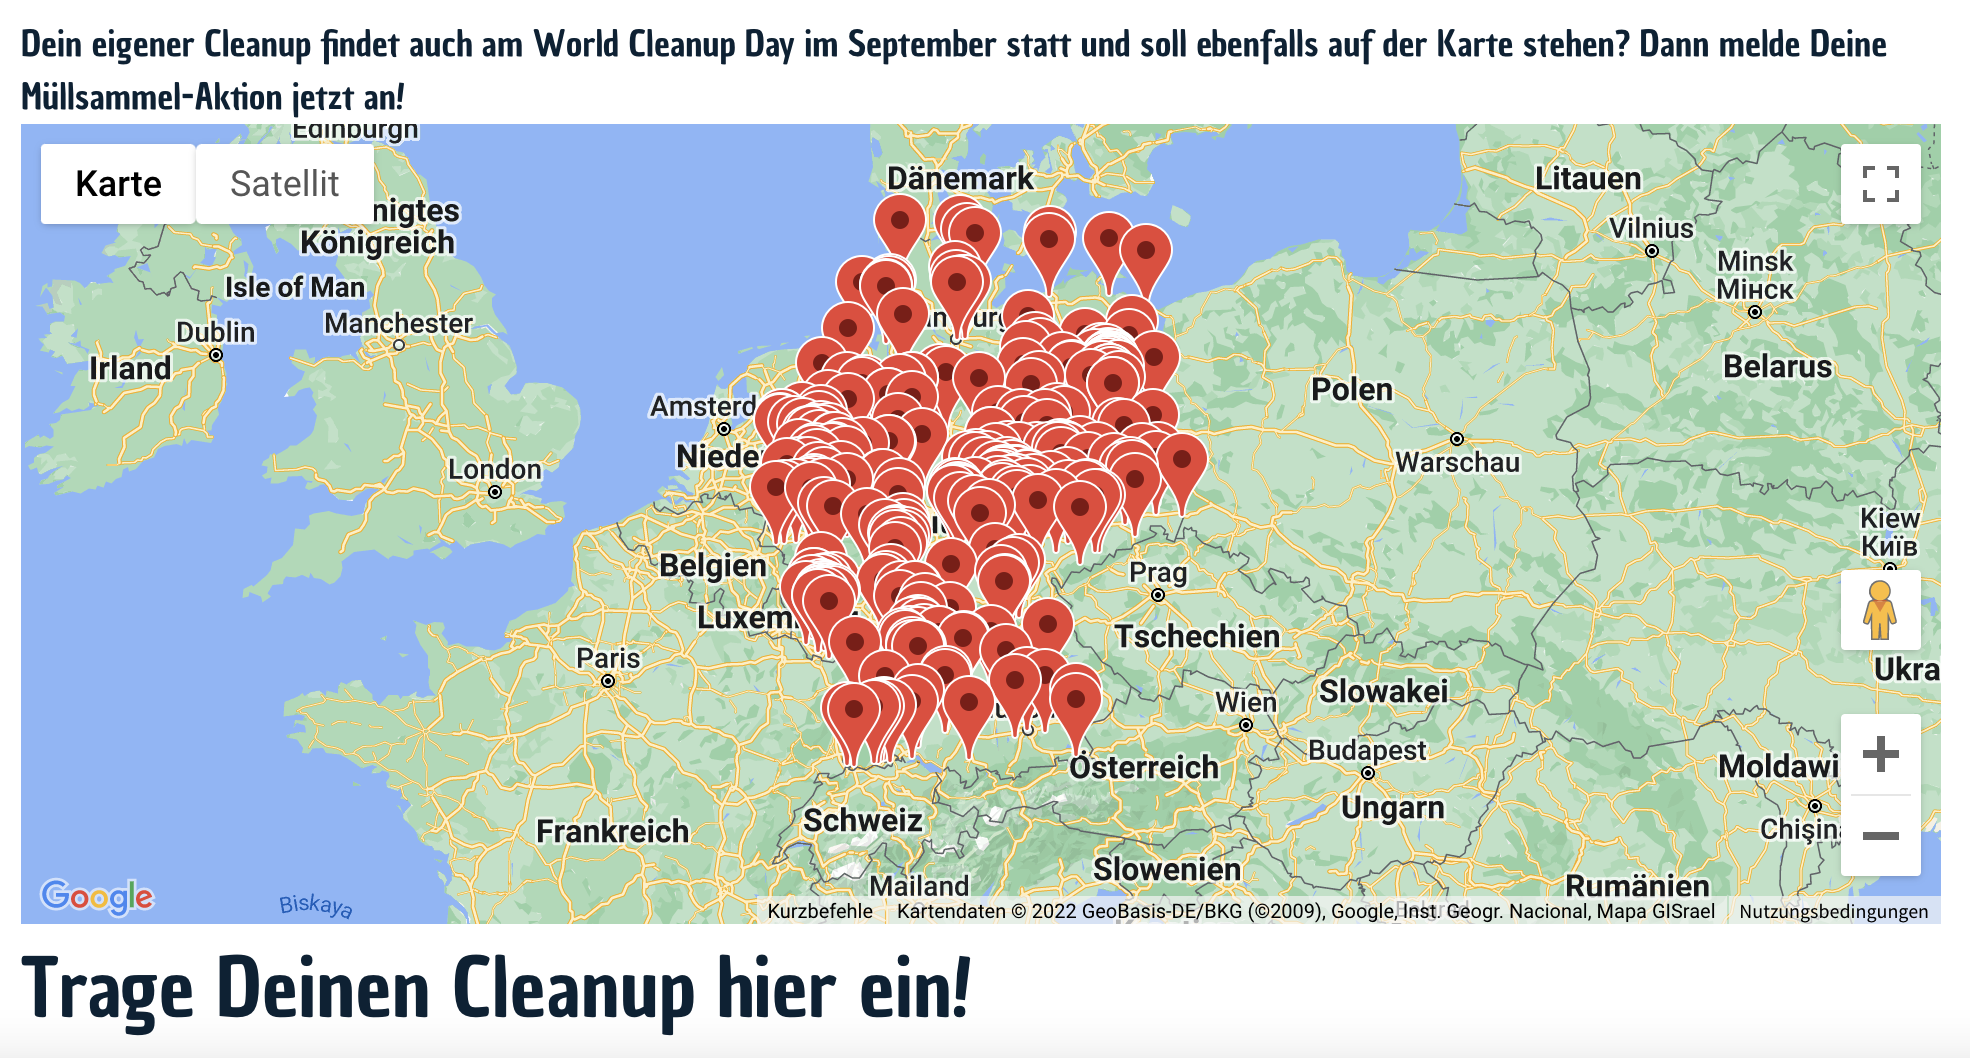 Karte mit allen angemeldeten Cleanups